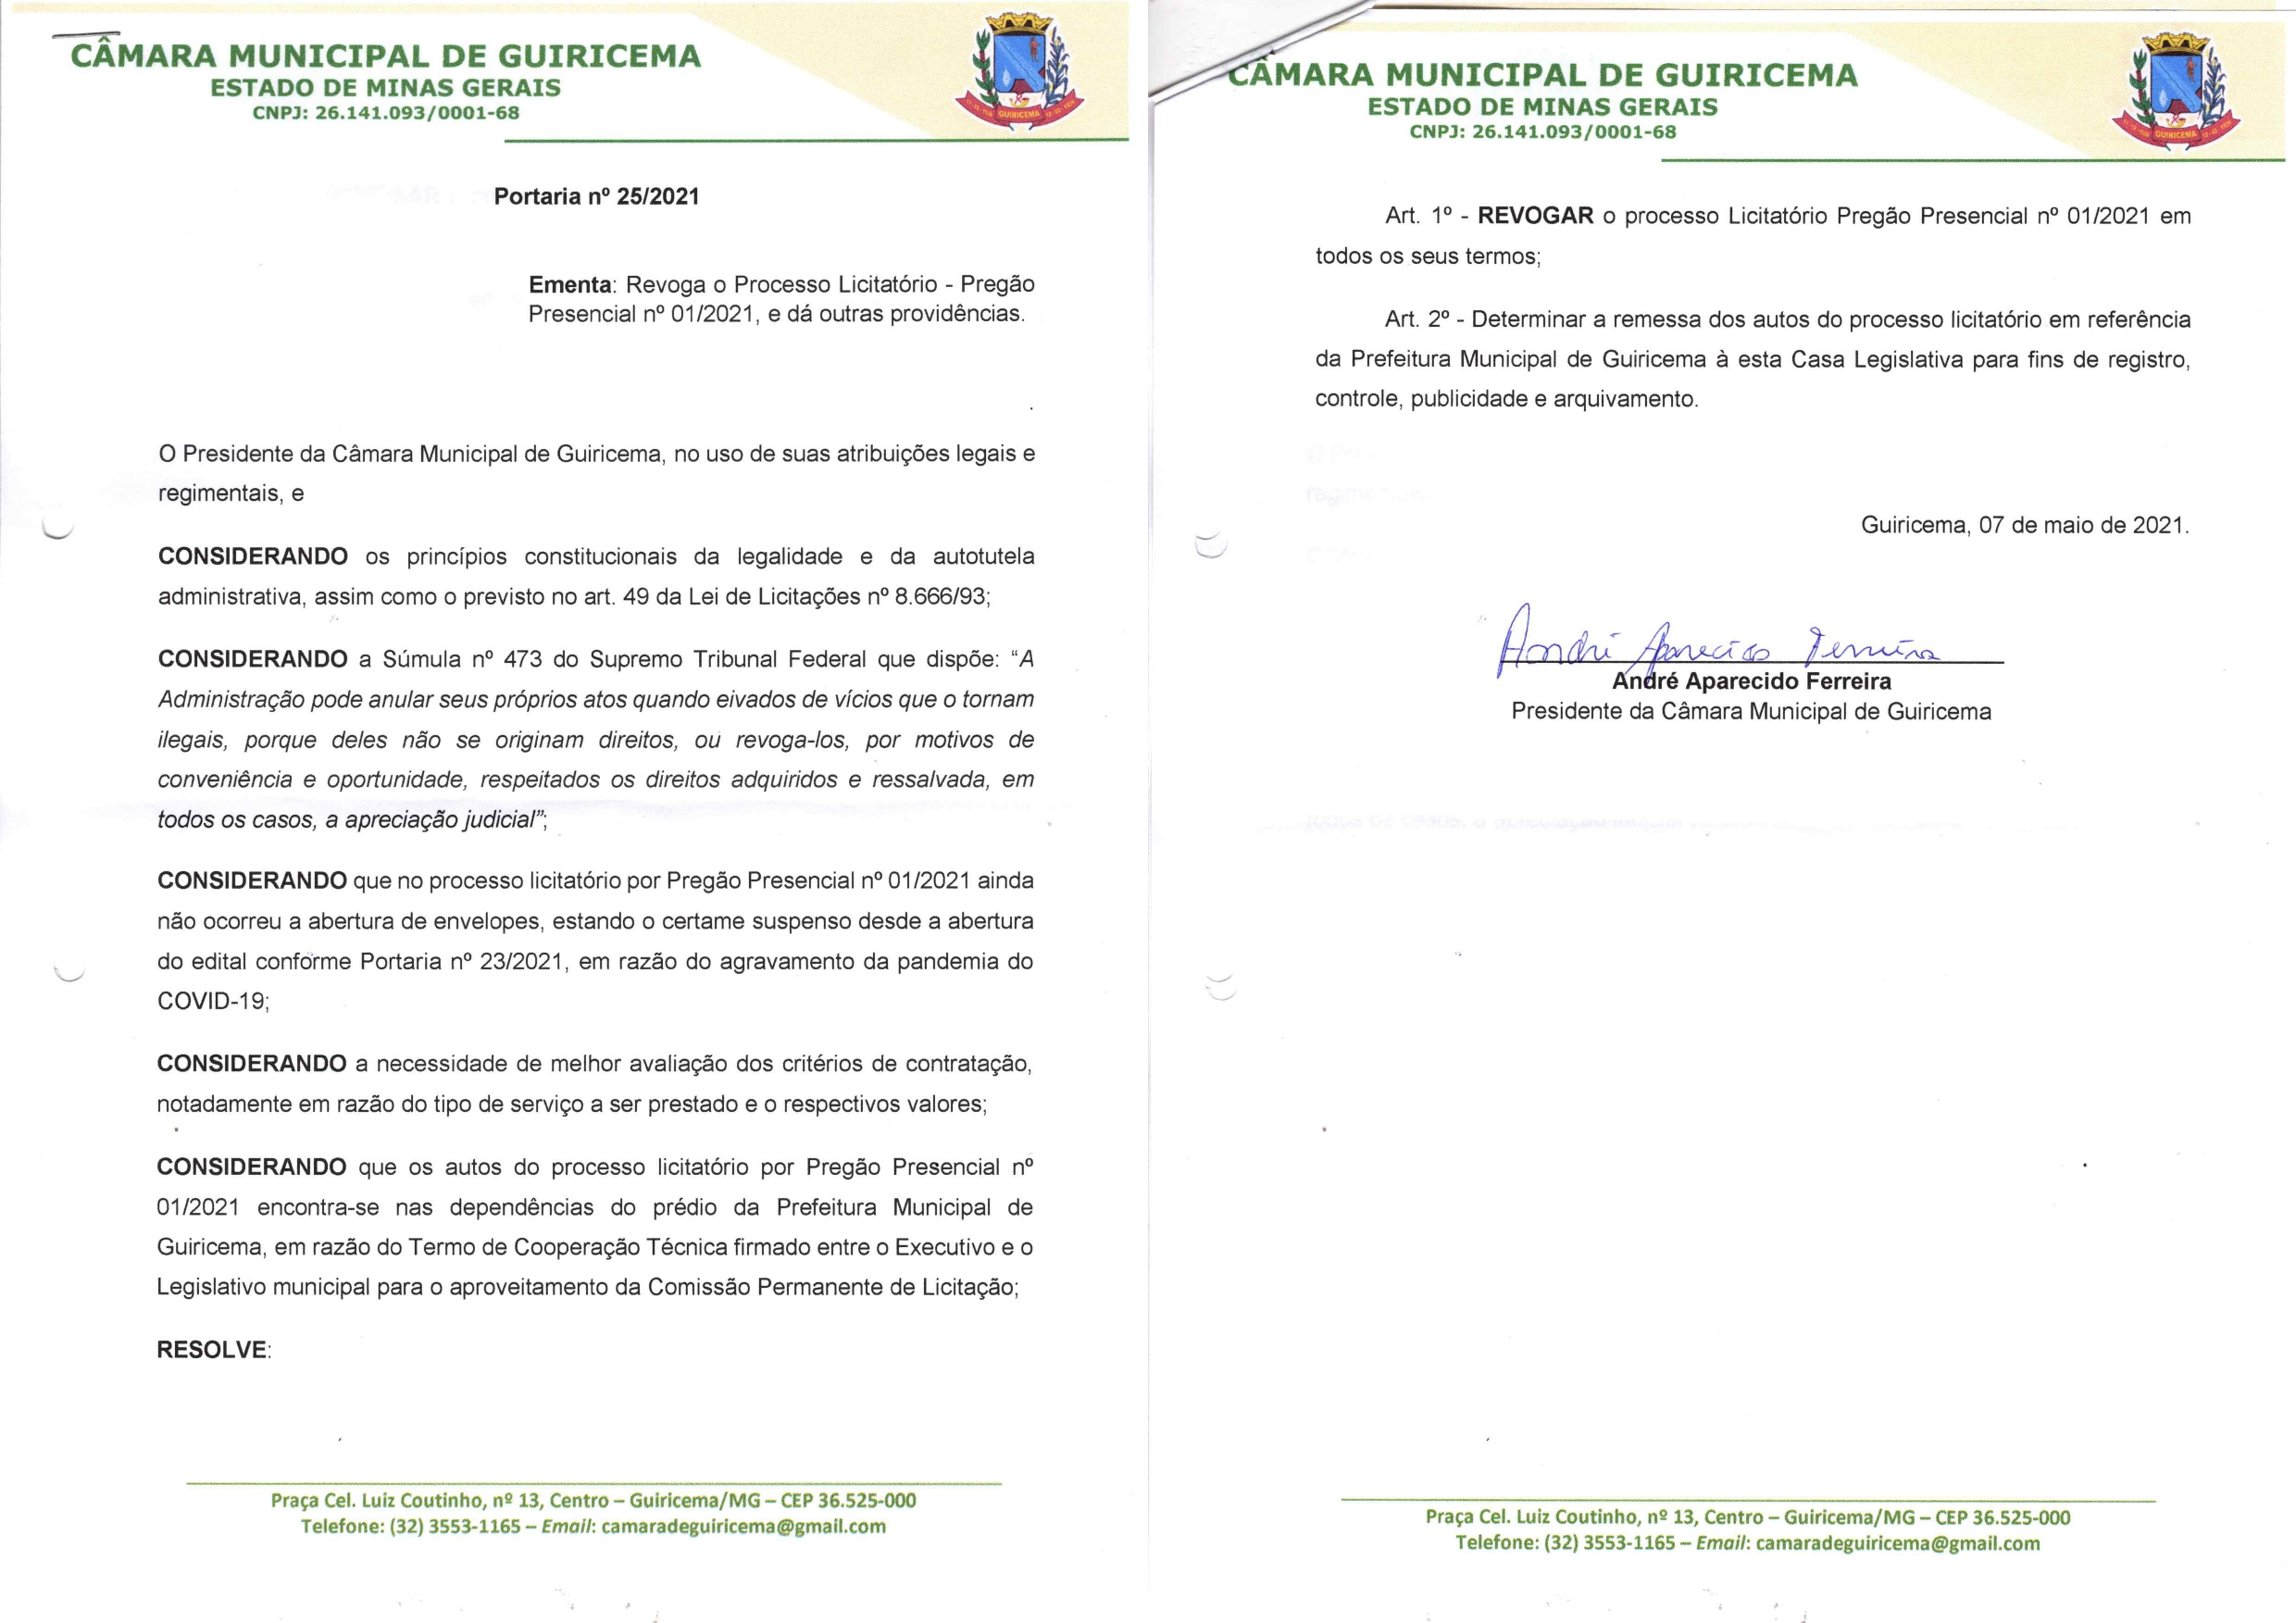 COMUNICADO DE REVOGAÇÃO DA LICITAÇÃO - PREGÃO PRESENCIAL 01/2021